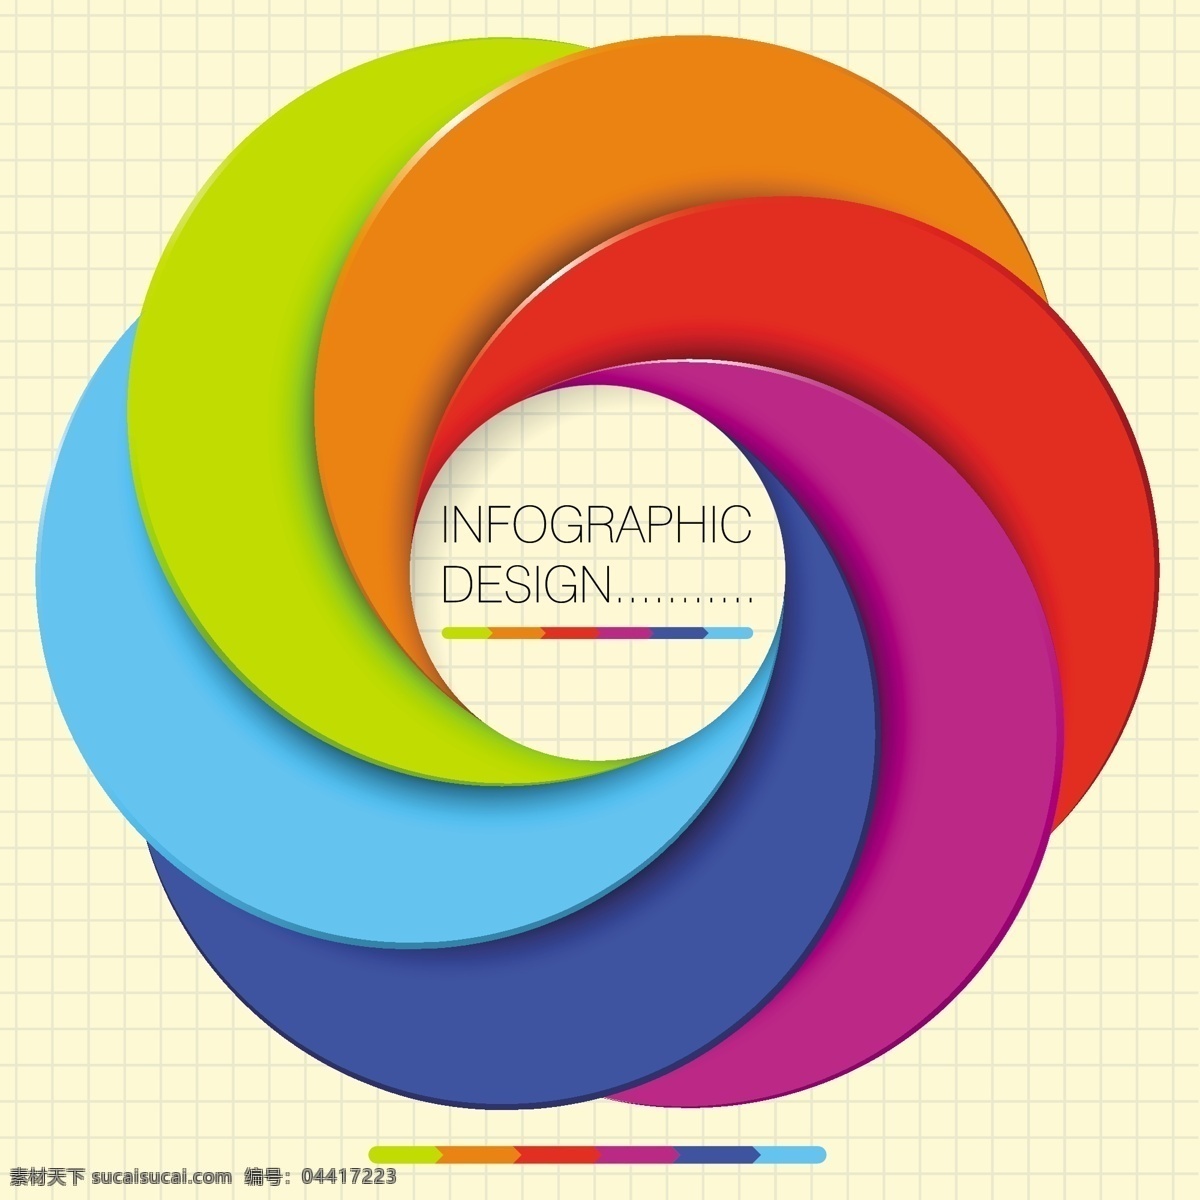 彩色 旋转 圆形 立体 图表 彩色圆形 创意 图标 信息图表 图标设计 办公学习 生活百科 矢量素材 白色